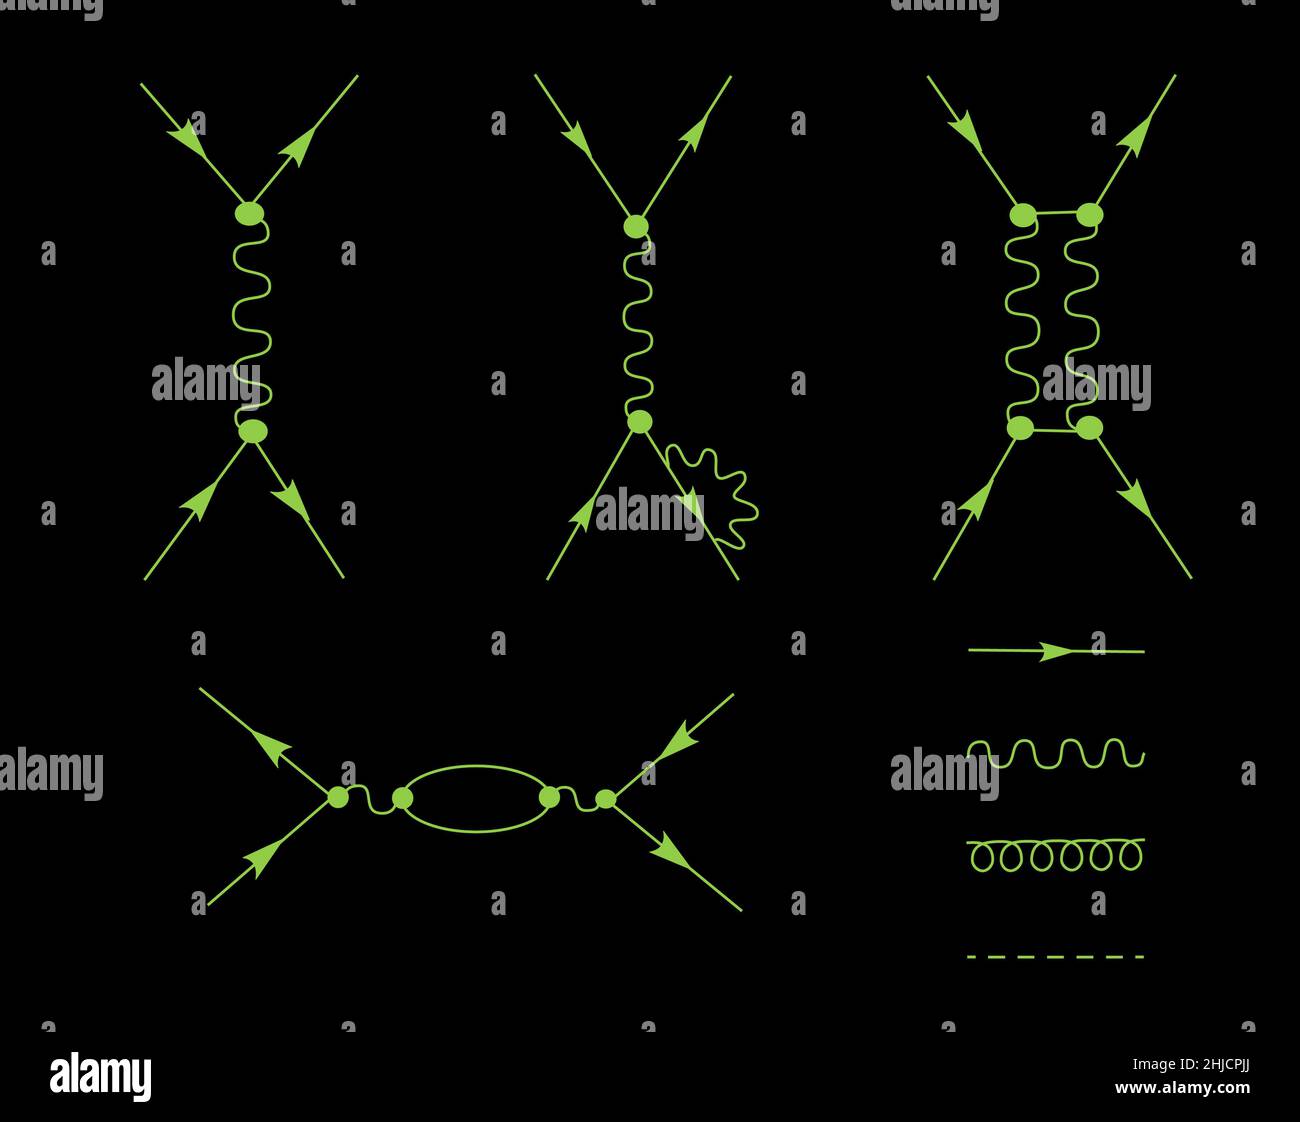 Diagrammi che rappresentano le interazioni elettromagnetiche delle particelle subatomiche cariche. Questi tipi di diagrammi sono stati inventati dal fisico Richard Feynman. Il diagramma può essere verticale o orizzontale. Foto Stock